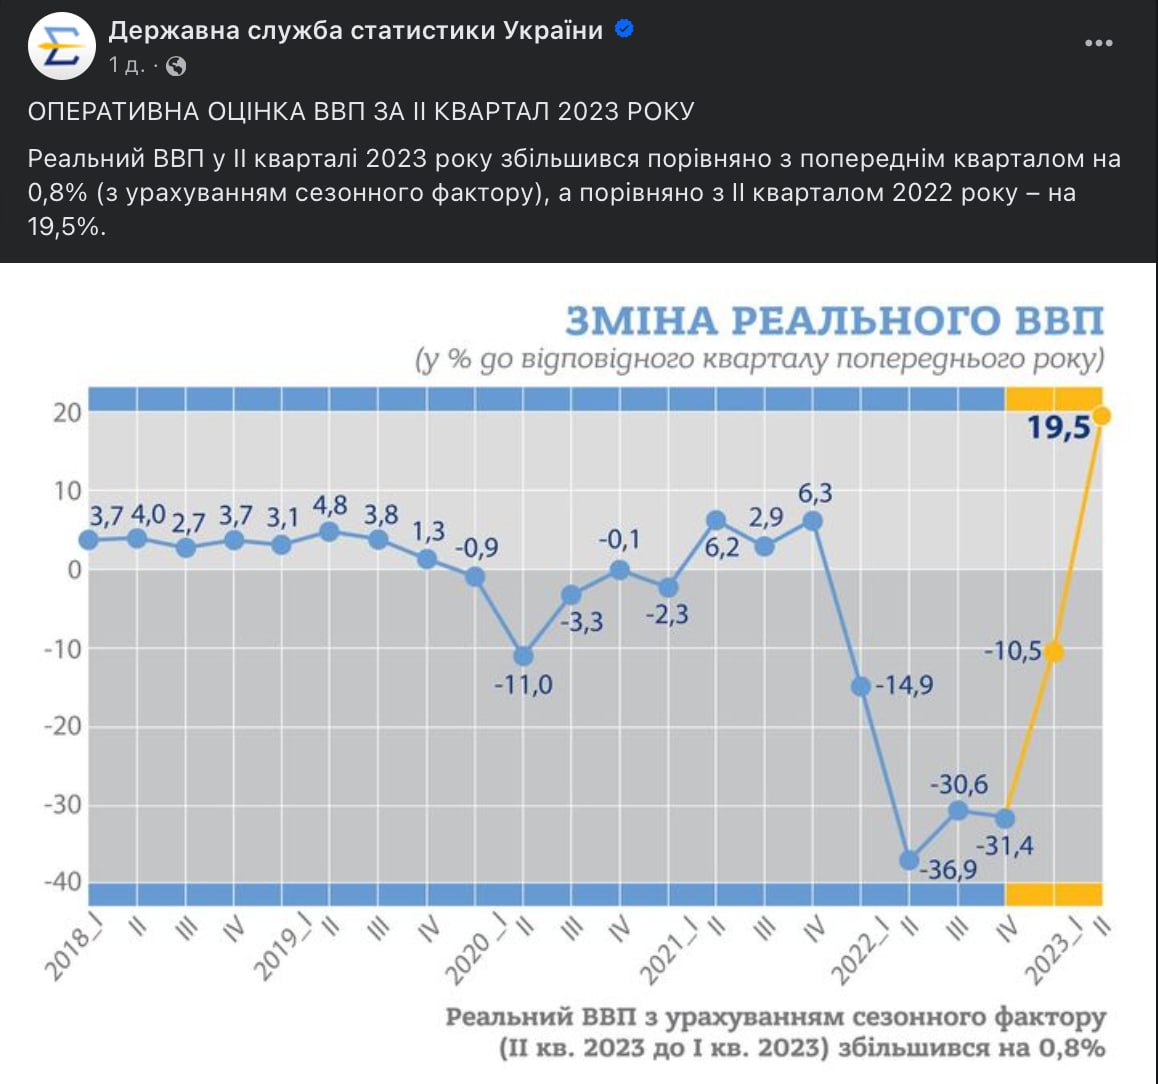 Реальний ВВП України за підсумками другого кварталу 2023 року зріс на 19,5%, — Державна служба статистики